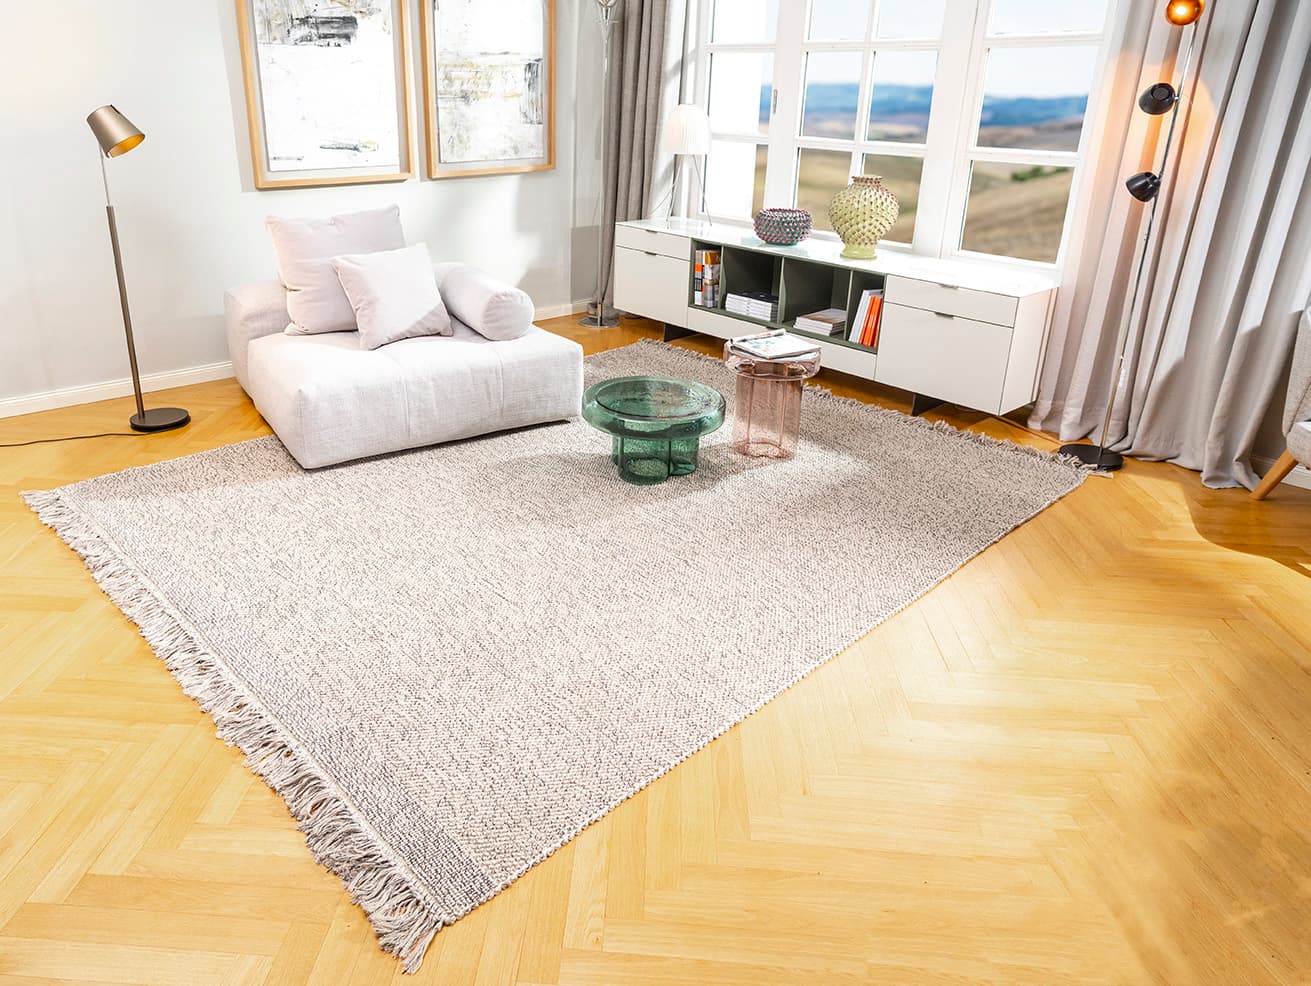 Wohnzimmer mit handgewebtem teppich in beige aus sardinien